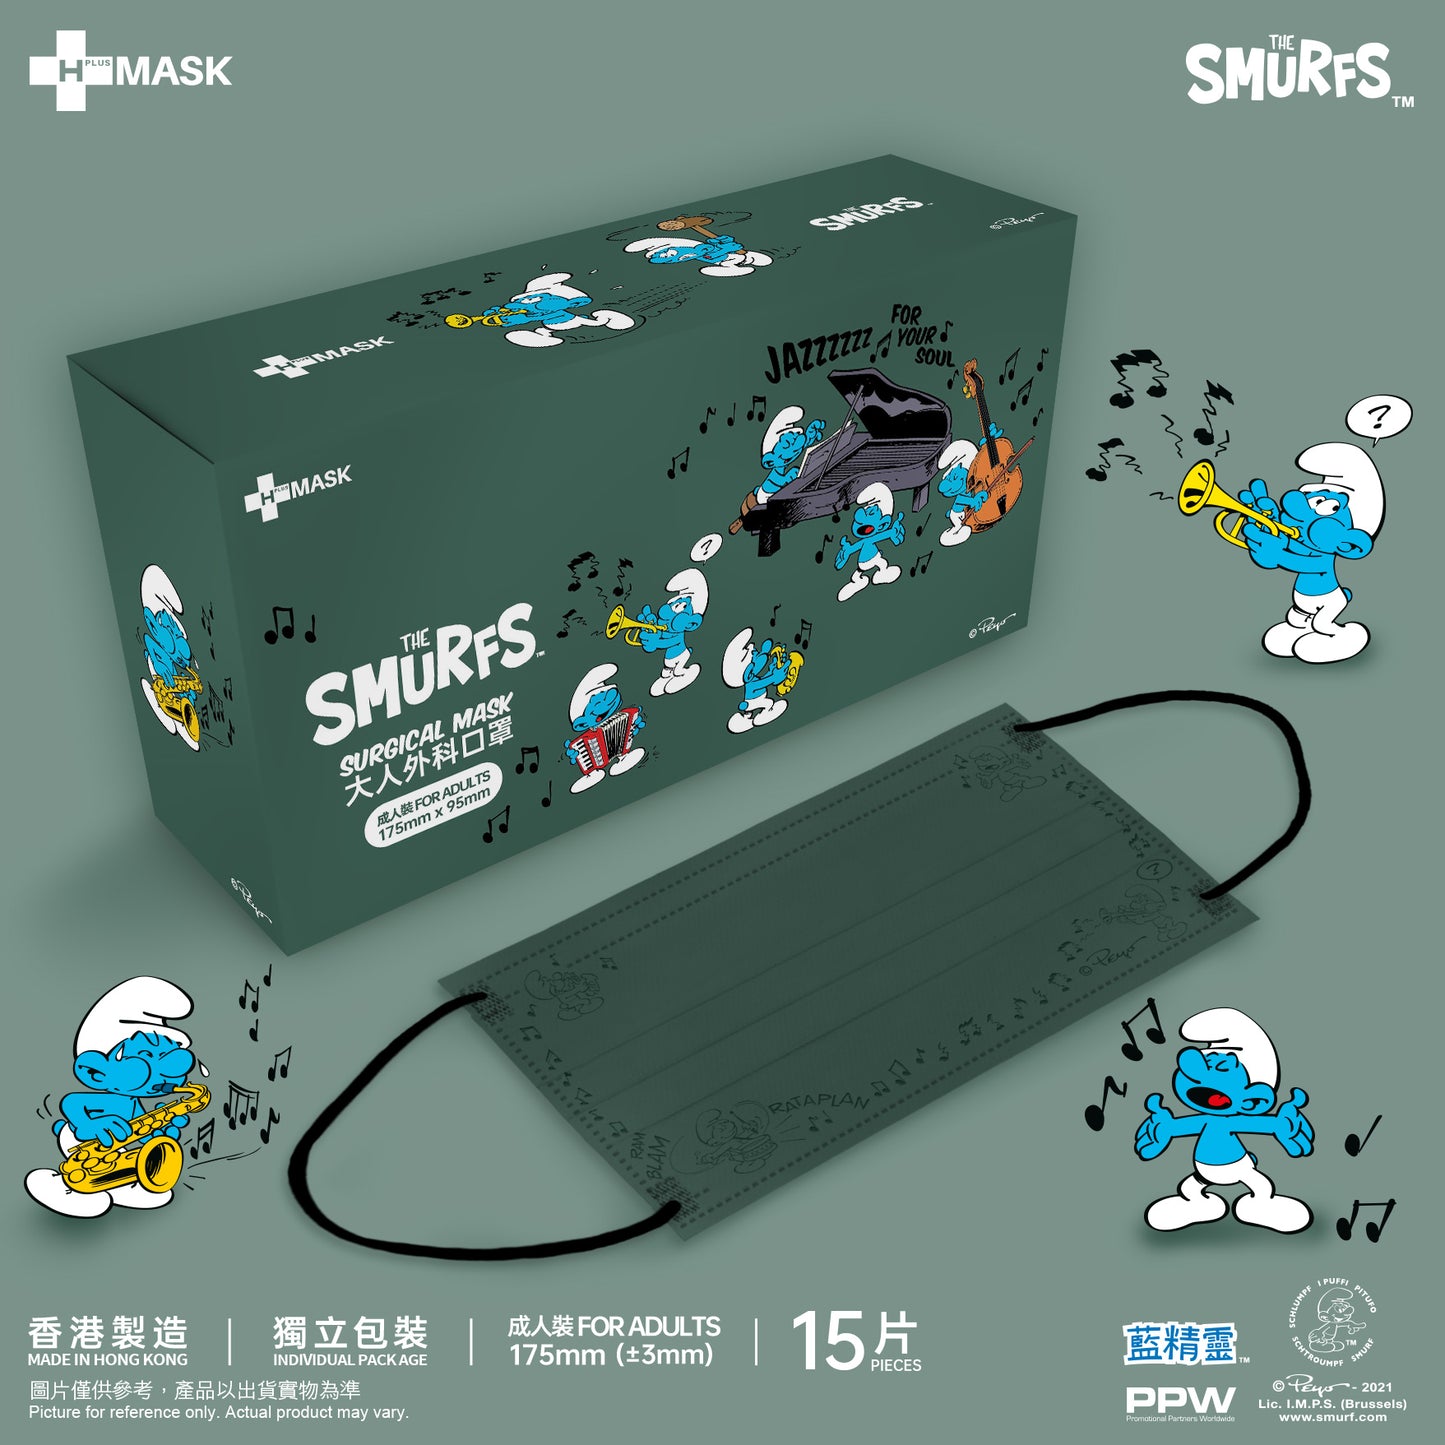 The Smurfs 藍精靈 • 秋冬系列 Groovy Jazz 壓紋款 • 氣質墨綠 (成人15片獨立包裝)